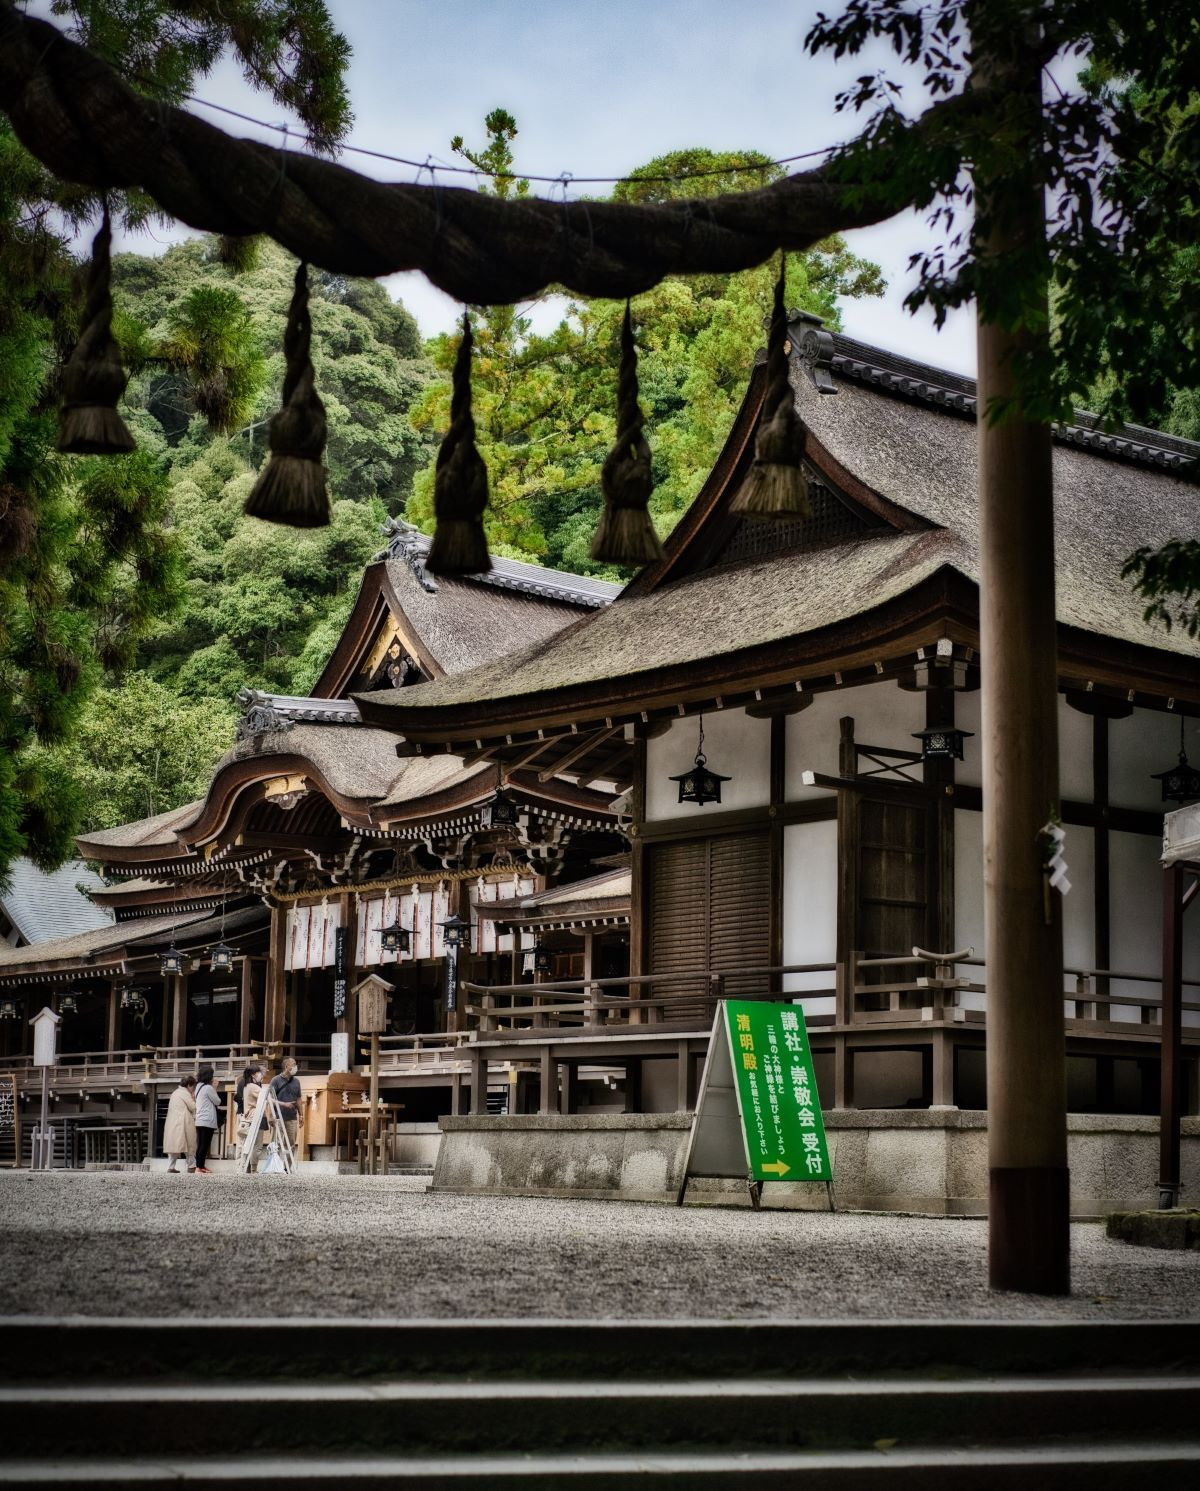 Atracciones turísticas gastronómicas en Nara, cuna del sake refinado